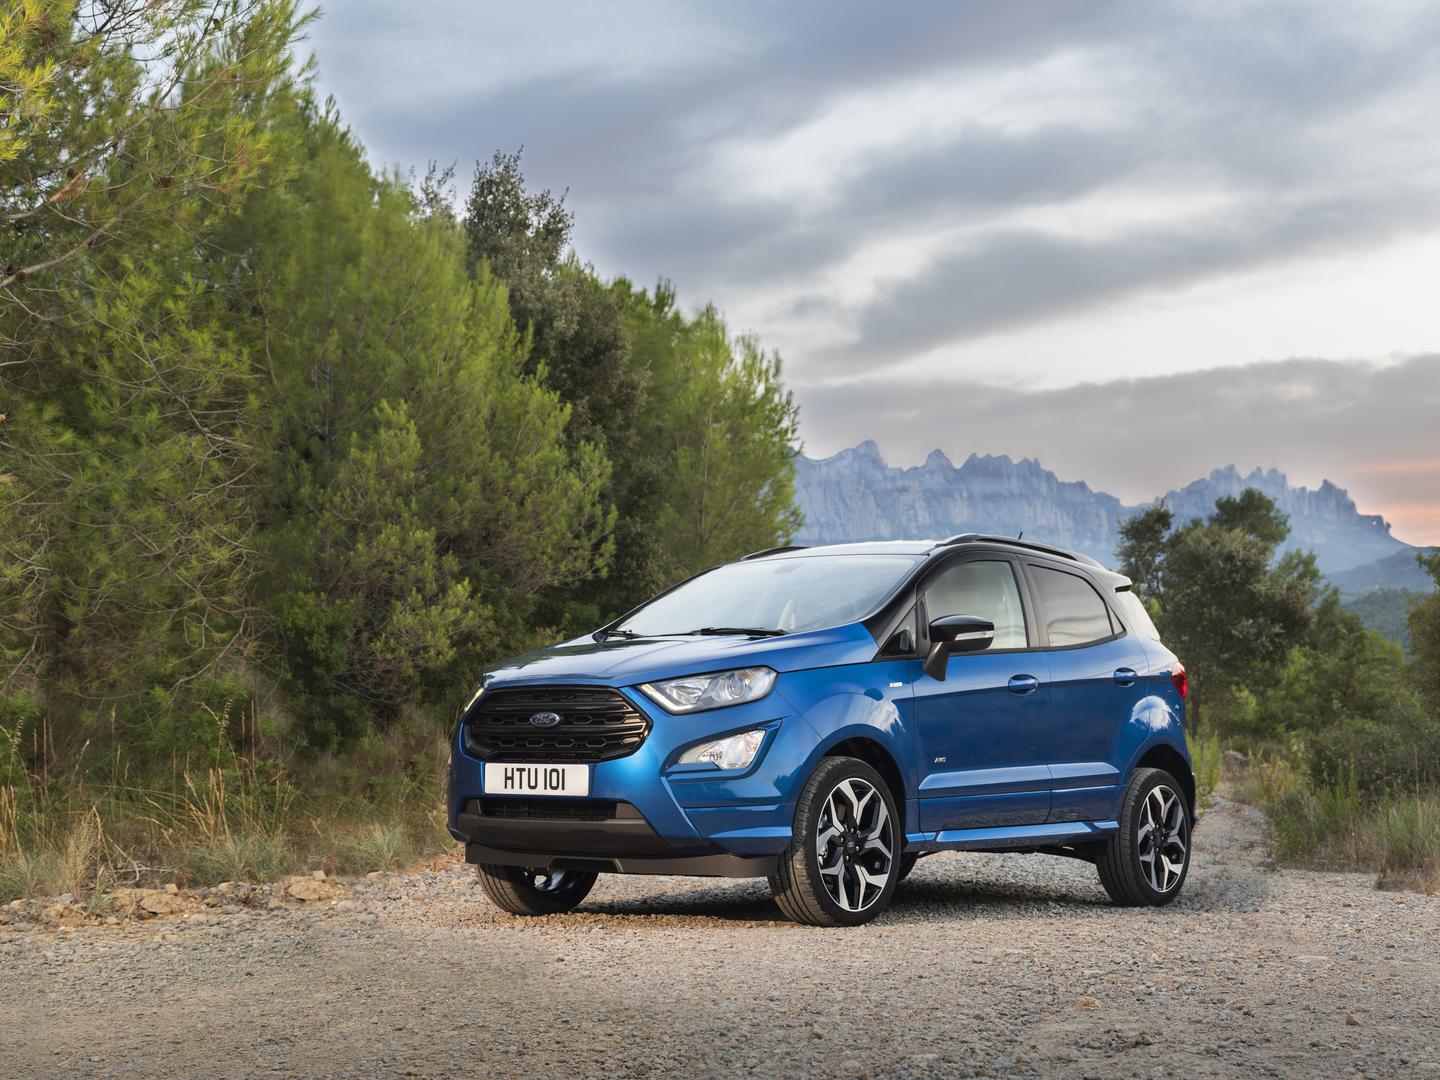 Osvježeni Ford EcoSport u Hrvatsku bi trebao stići u lipnju, a njegov dolazak označava početak proizvodnje u Europi umjesto dosadašnjeg u Indiji